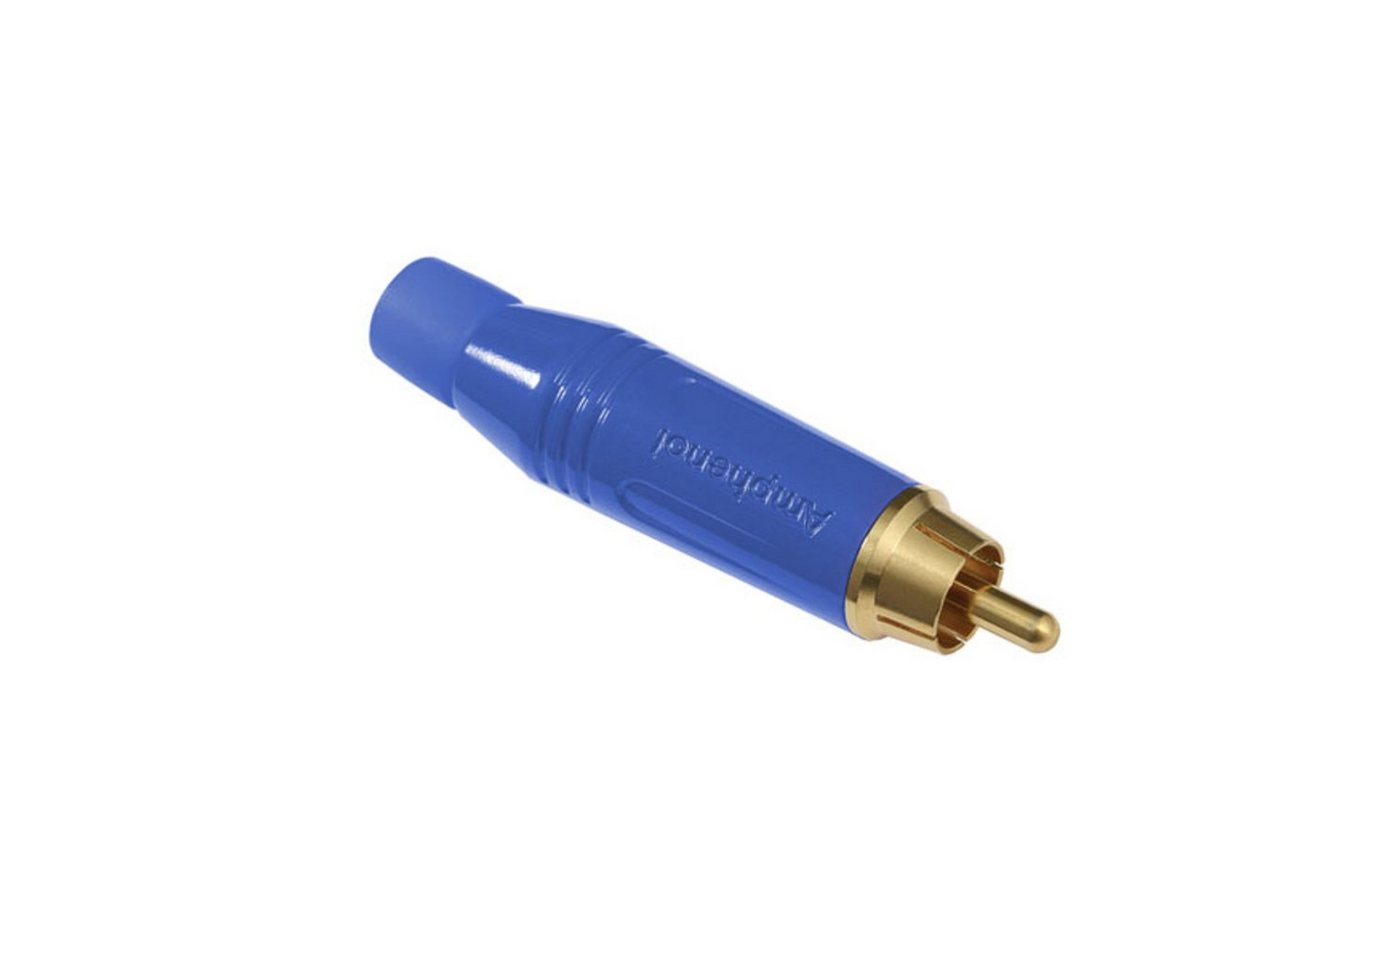 Amphenol Cinch-Stecker, (Stecker & Adapter, Kabel-Stecker), ACPR-BLU Cinchstecker blau - Kabel Stecker von Amphenol